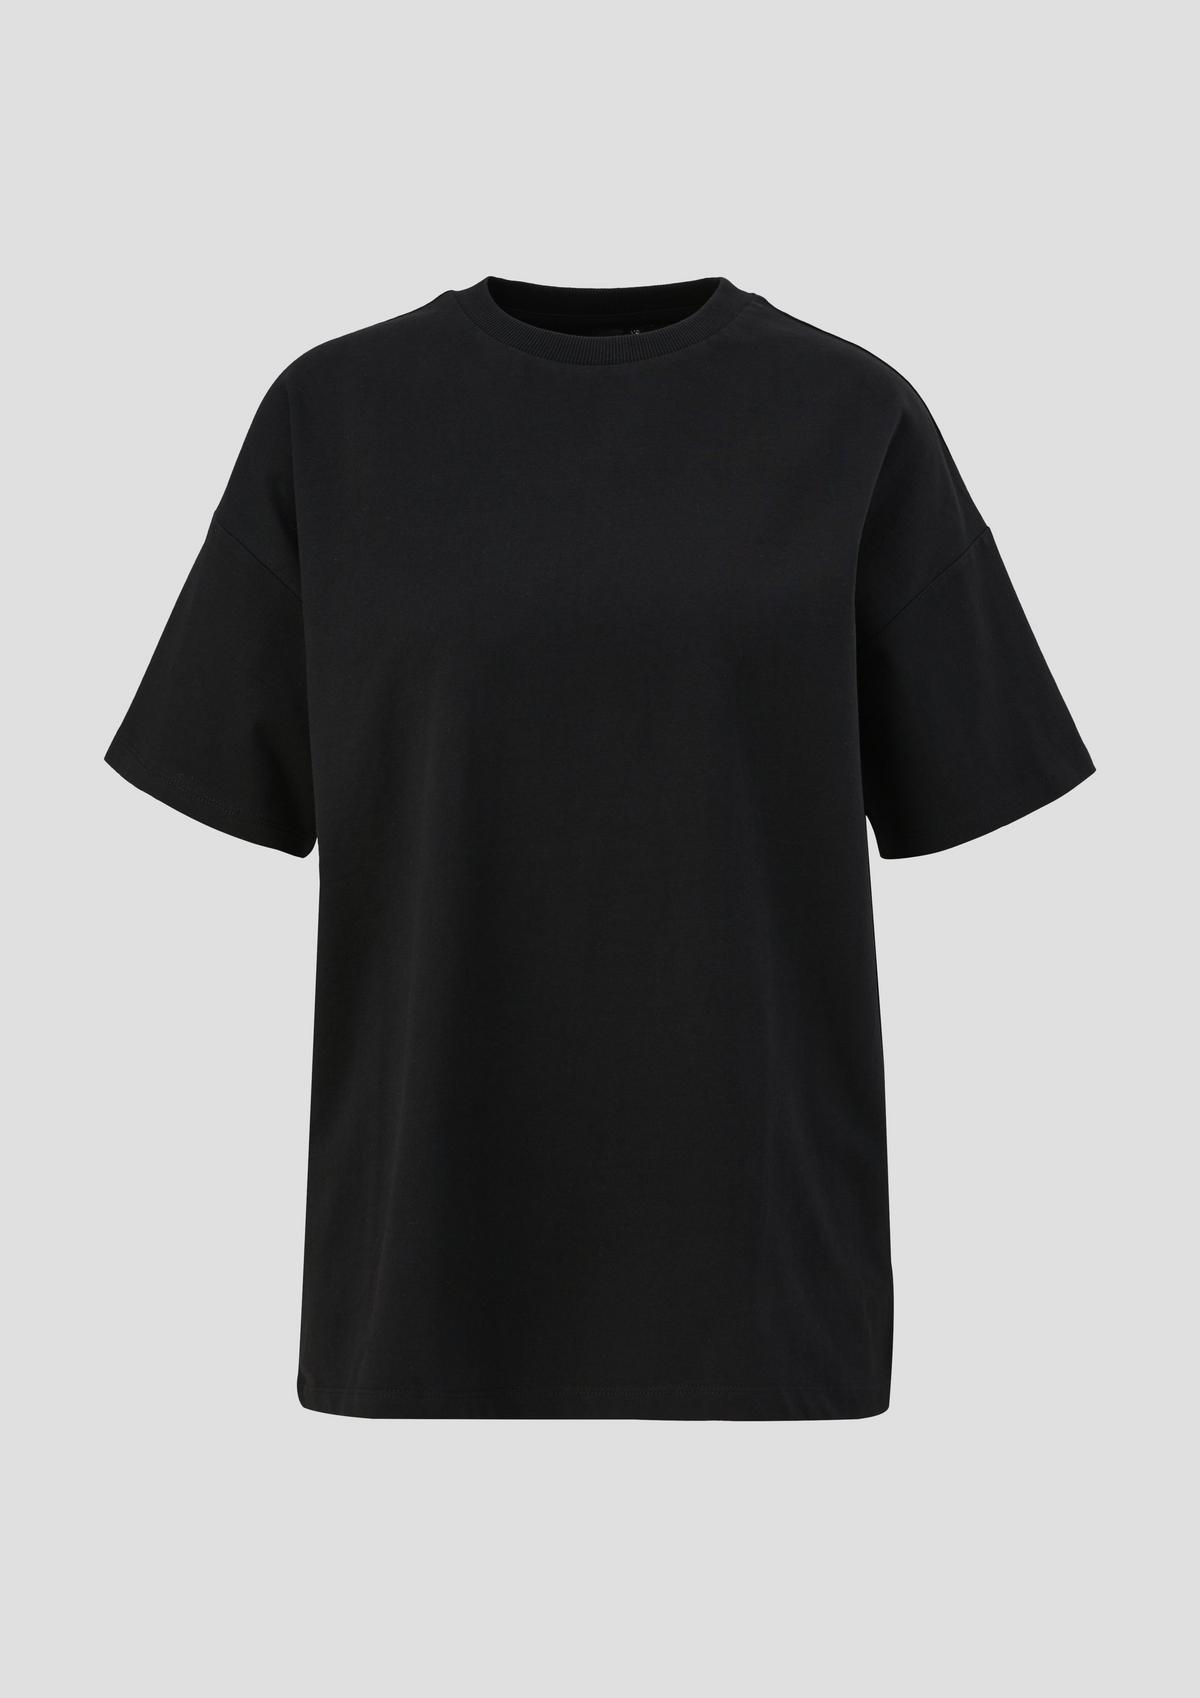 Baumwoll-Shirt mit Rückenprint schwarz | ELIF x QS 